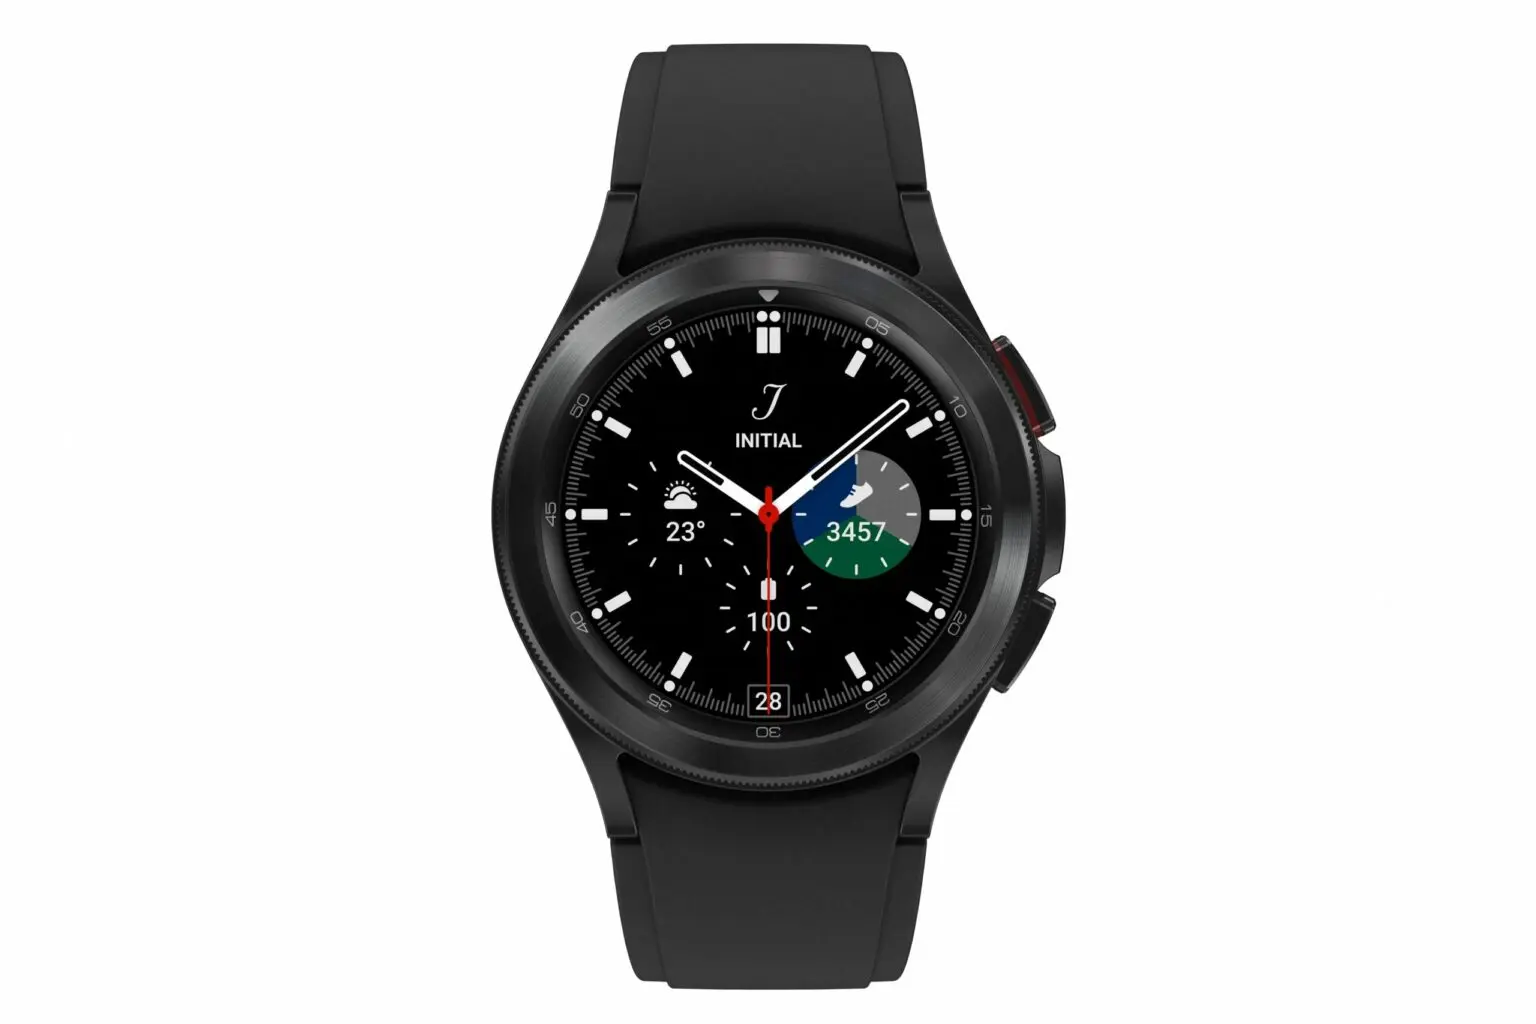 Se confirma que el Galaxy Watch4 no es compatible con el iPhone ni con teléfonos Huawei